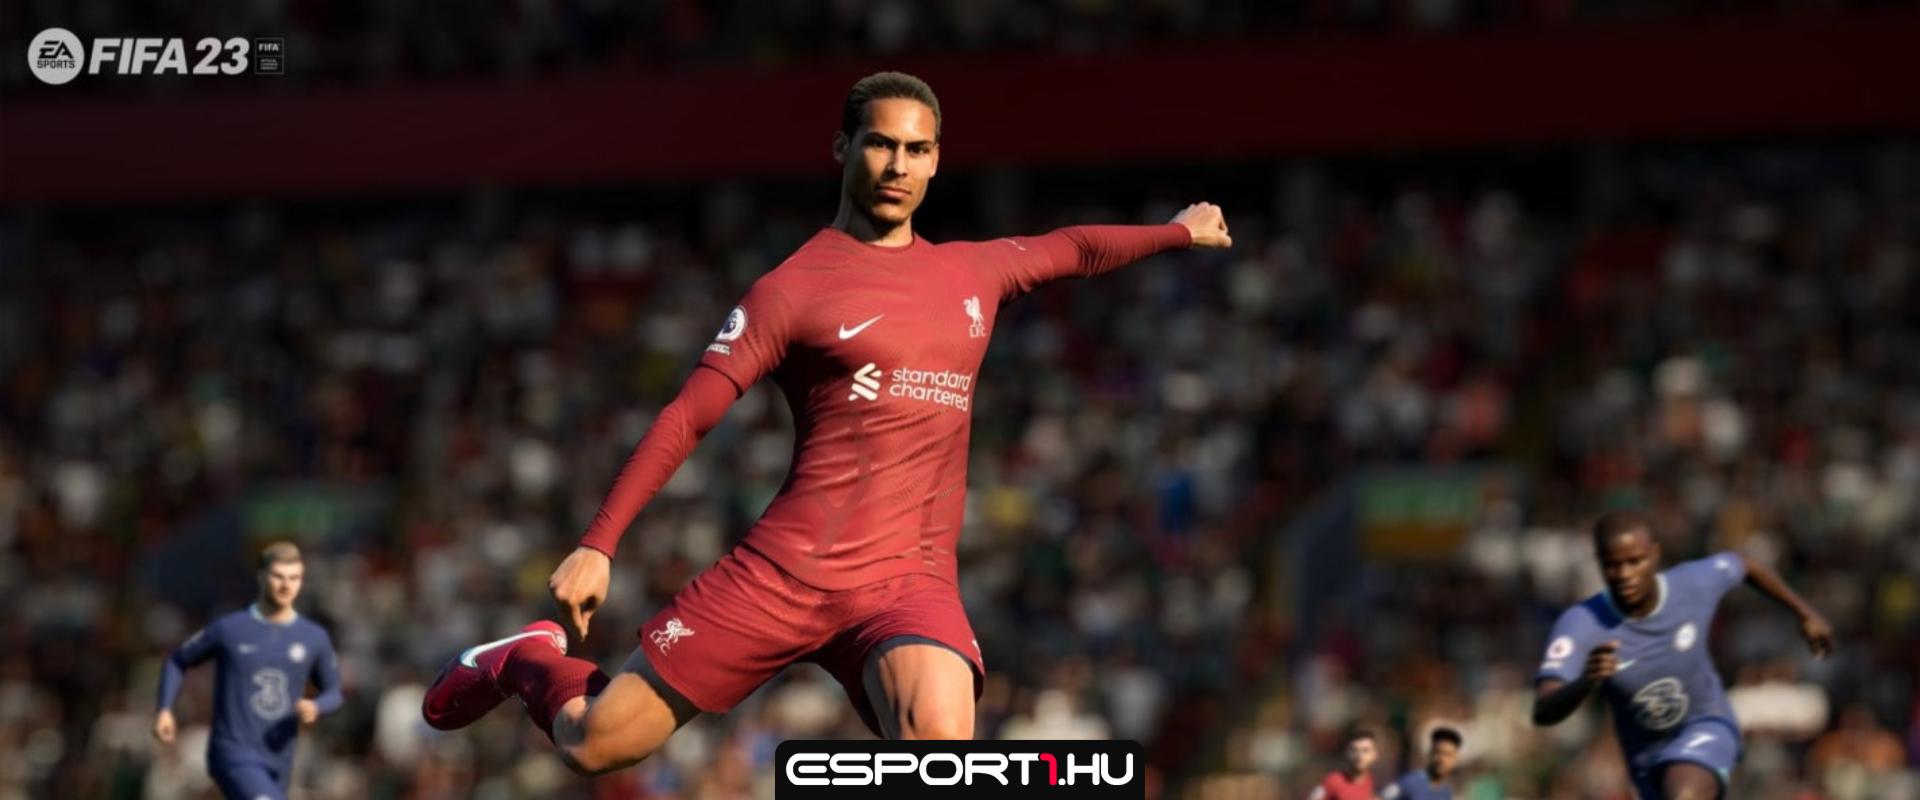 FIFA 23: Reagált az EA az új, ellentmondásos metára